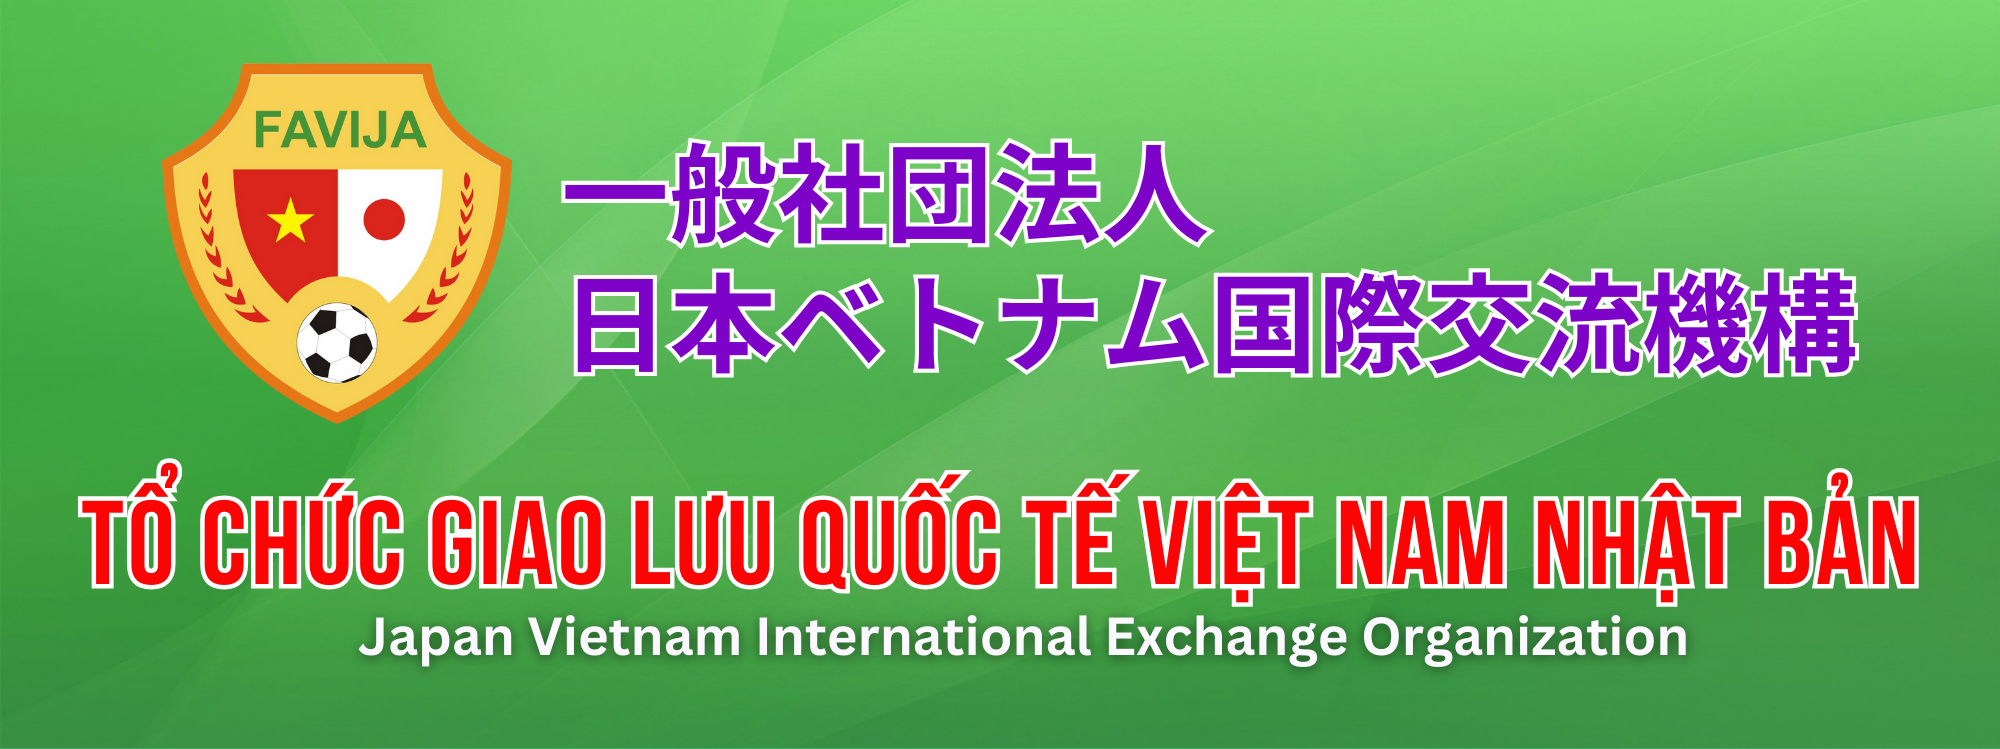 Tổ chức giao lưu quốc tế Việt Nam tại Nhật Bản